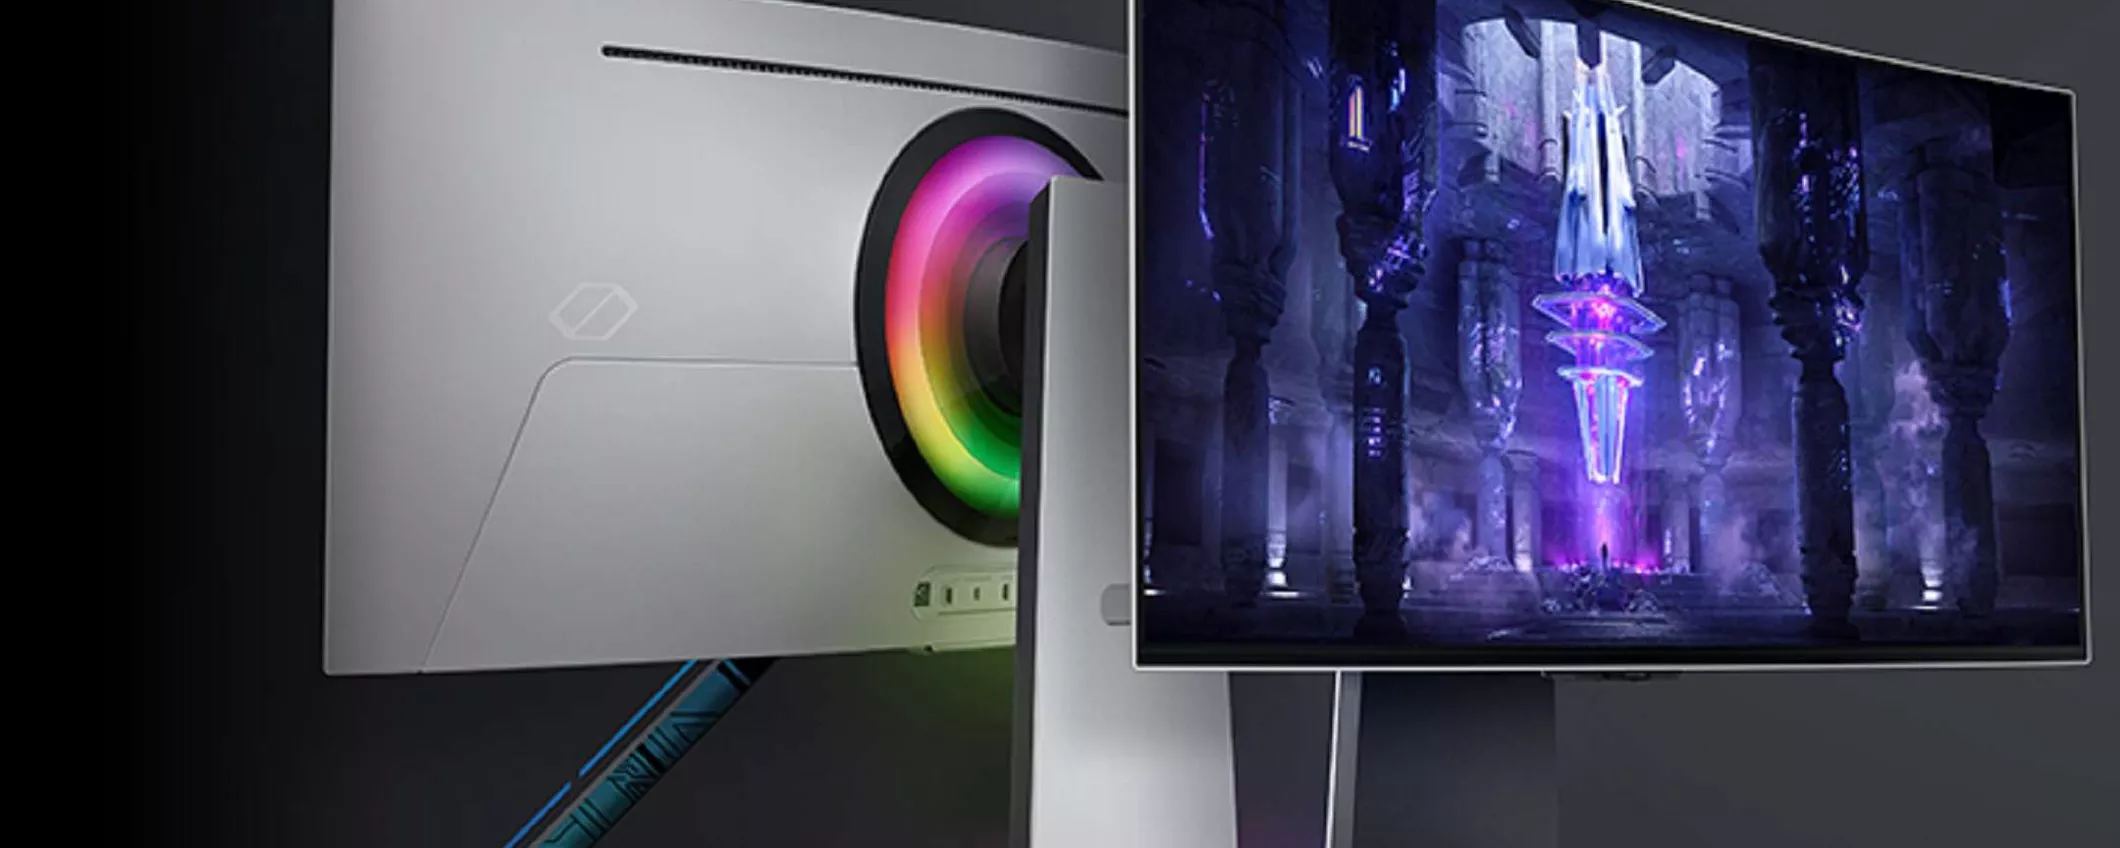 Samsung Odyssey G8 in offerta su Amazon: il re dei monitor da gaming